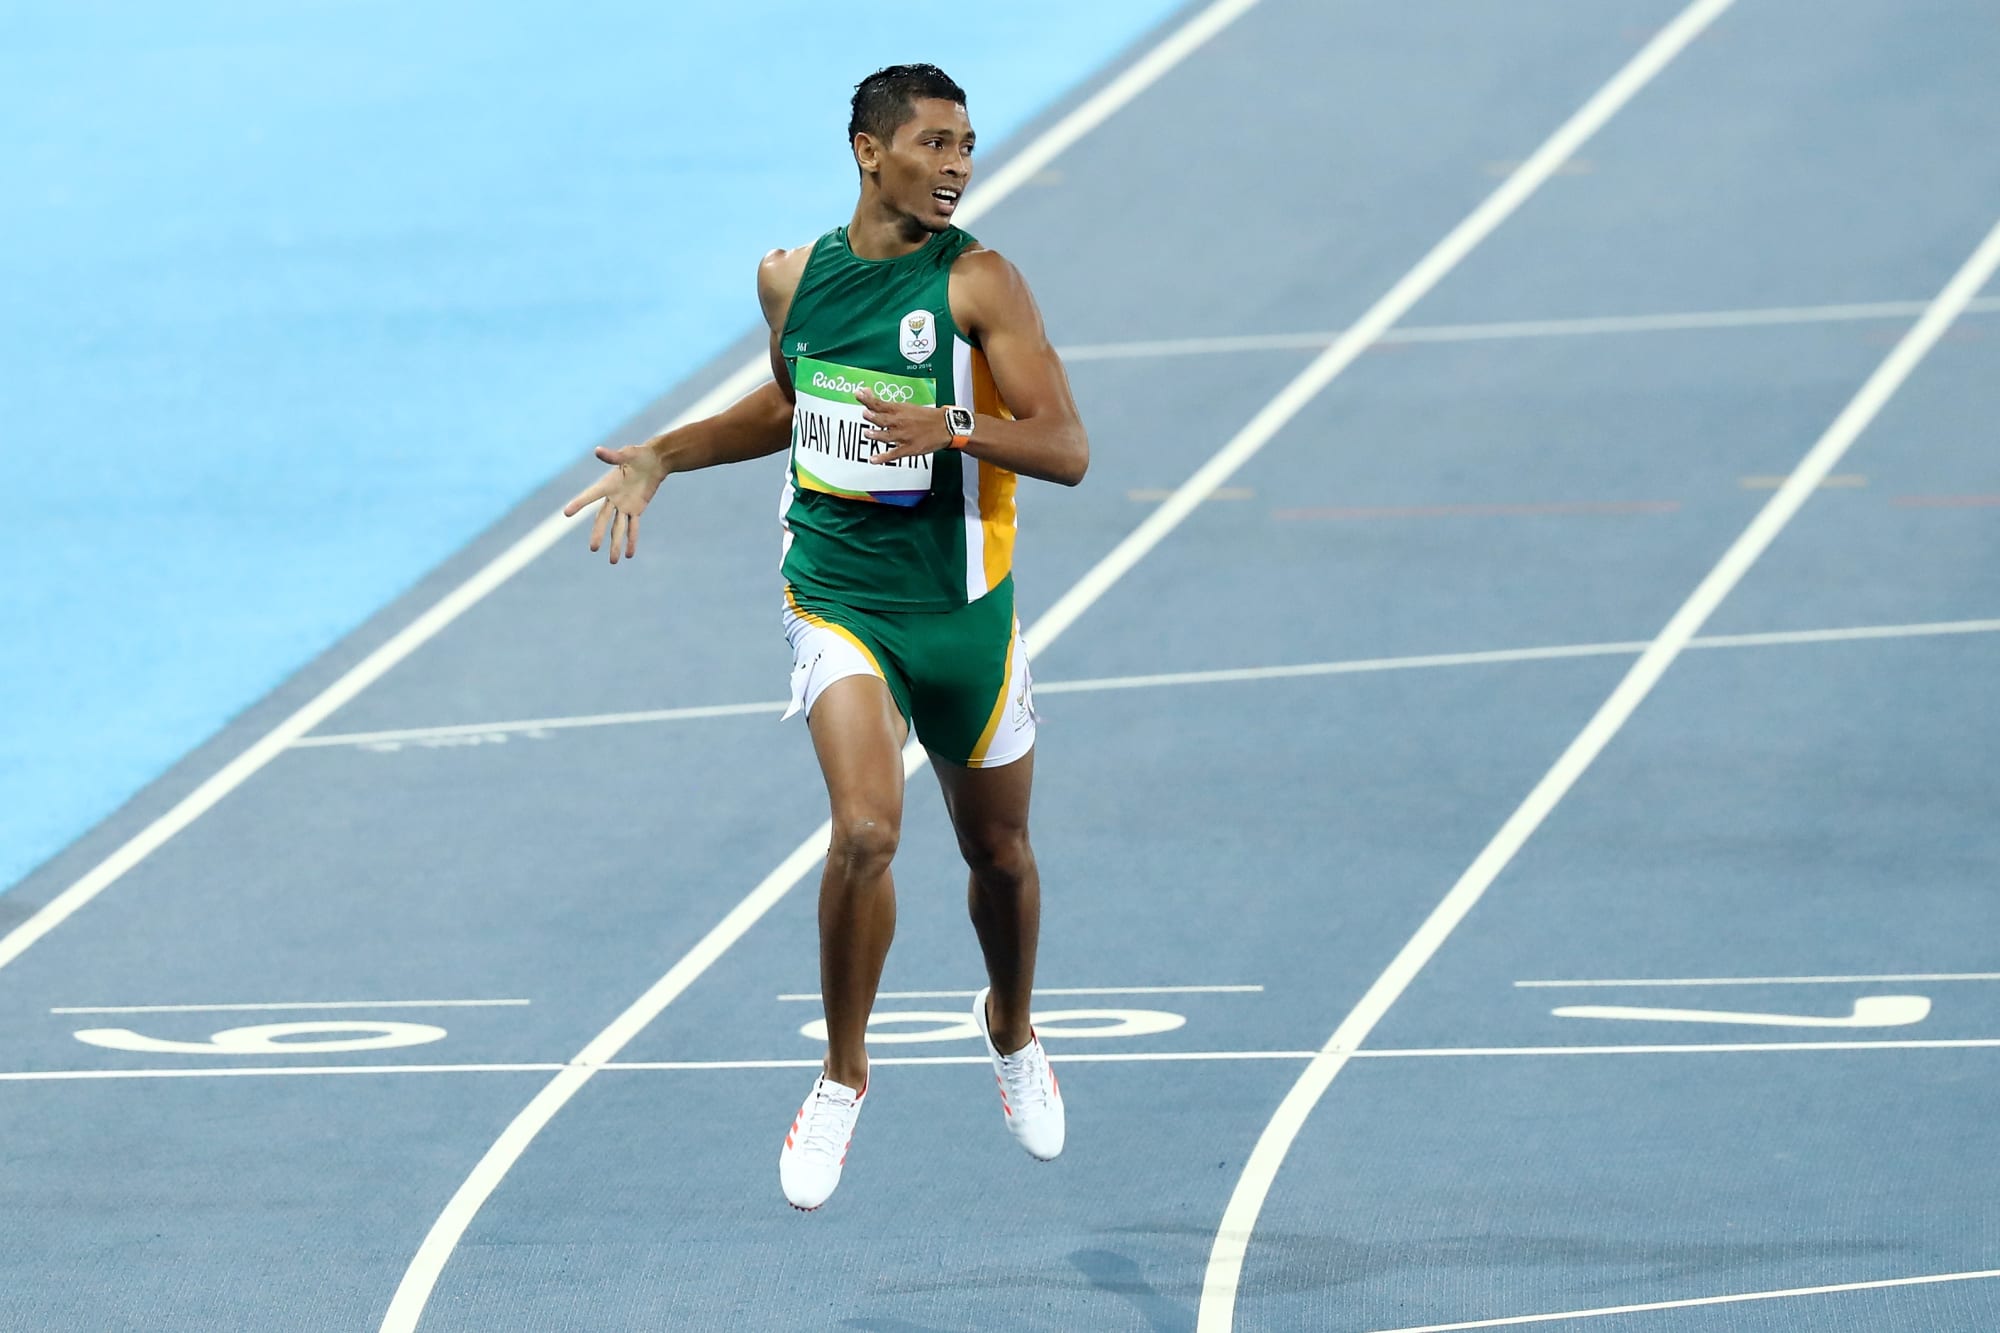 Wayde Van Niekerk breaks world record in Men's 400m at Rio Olympics